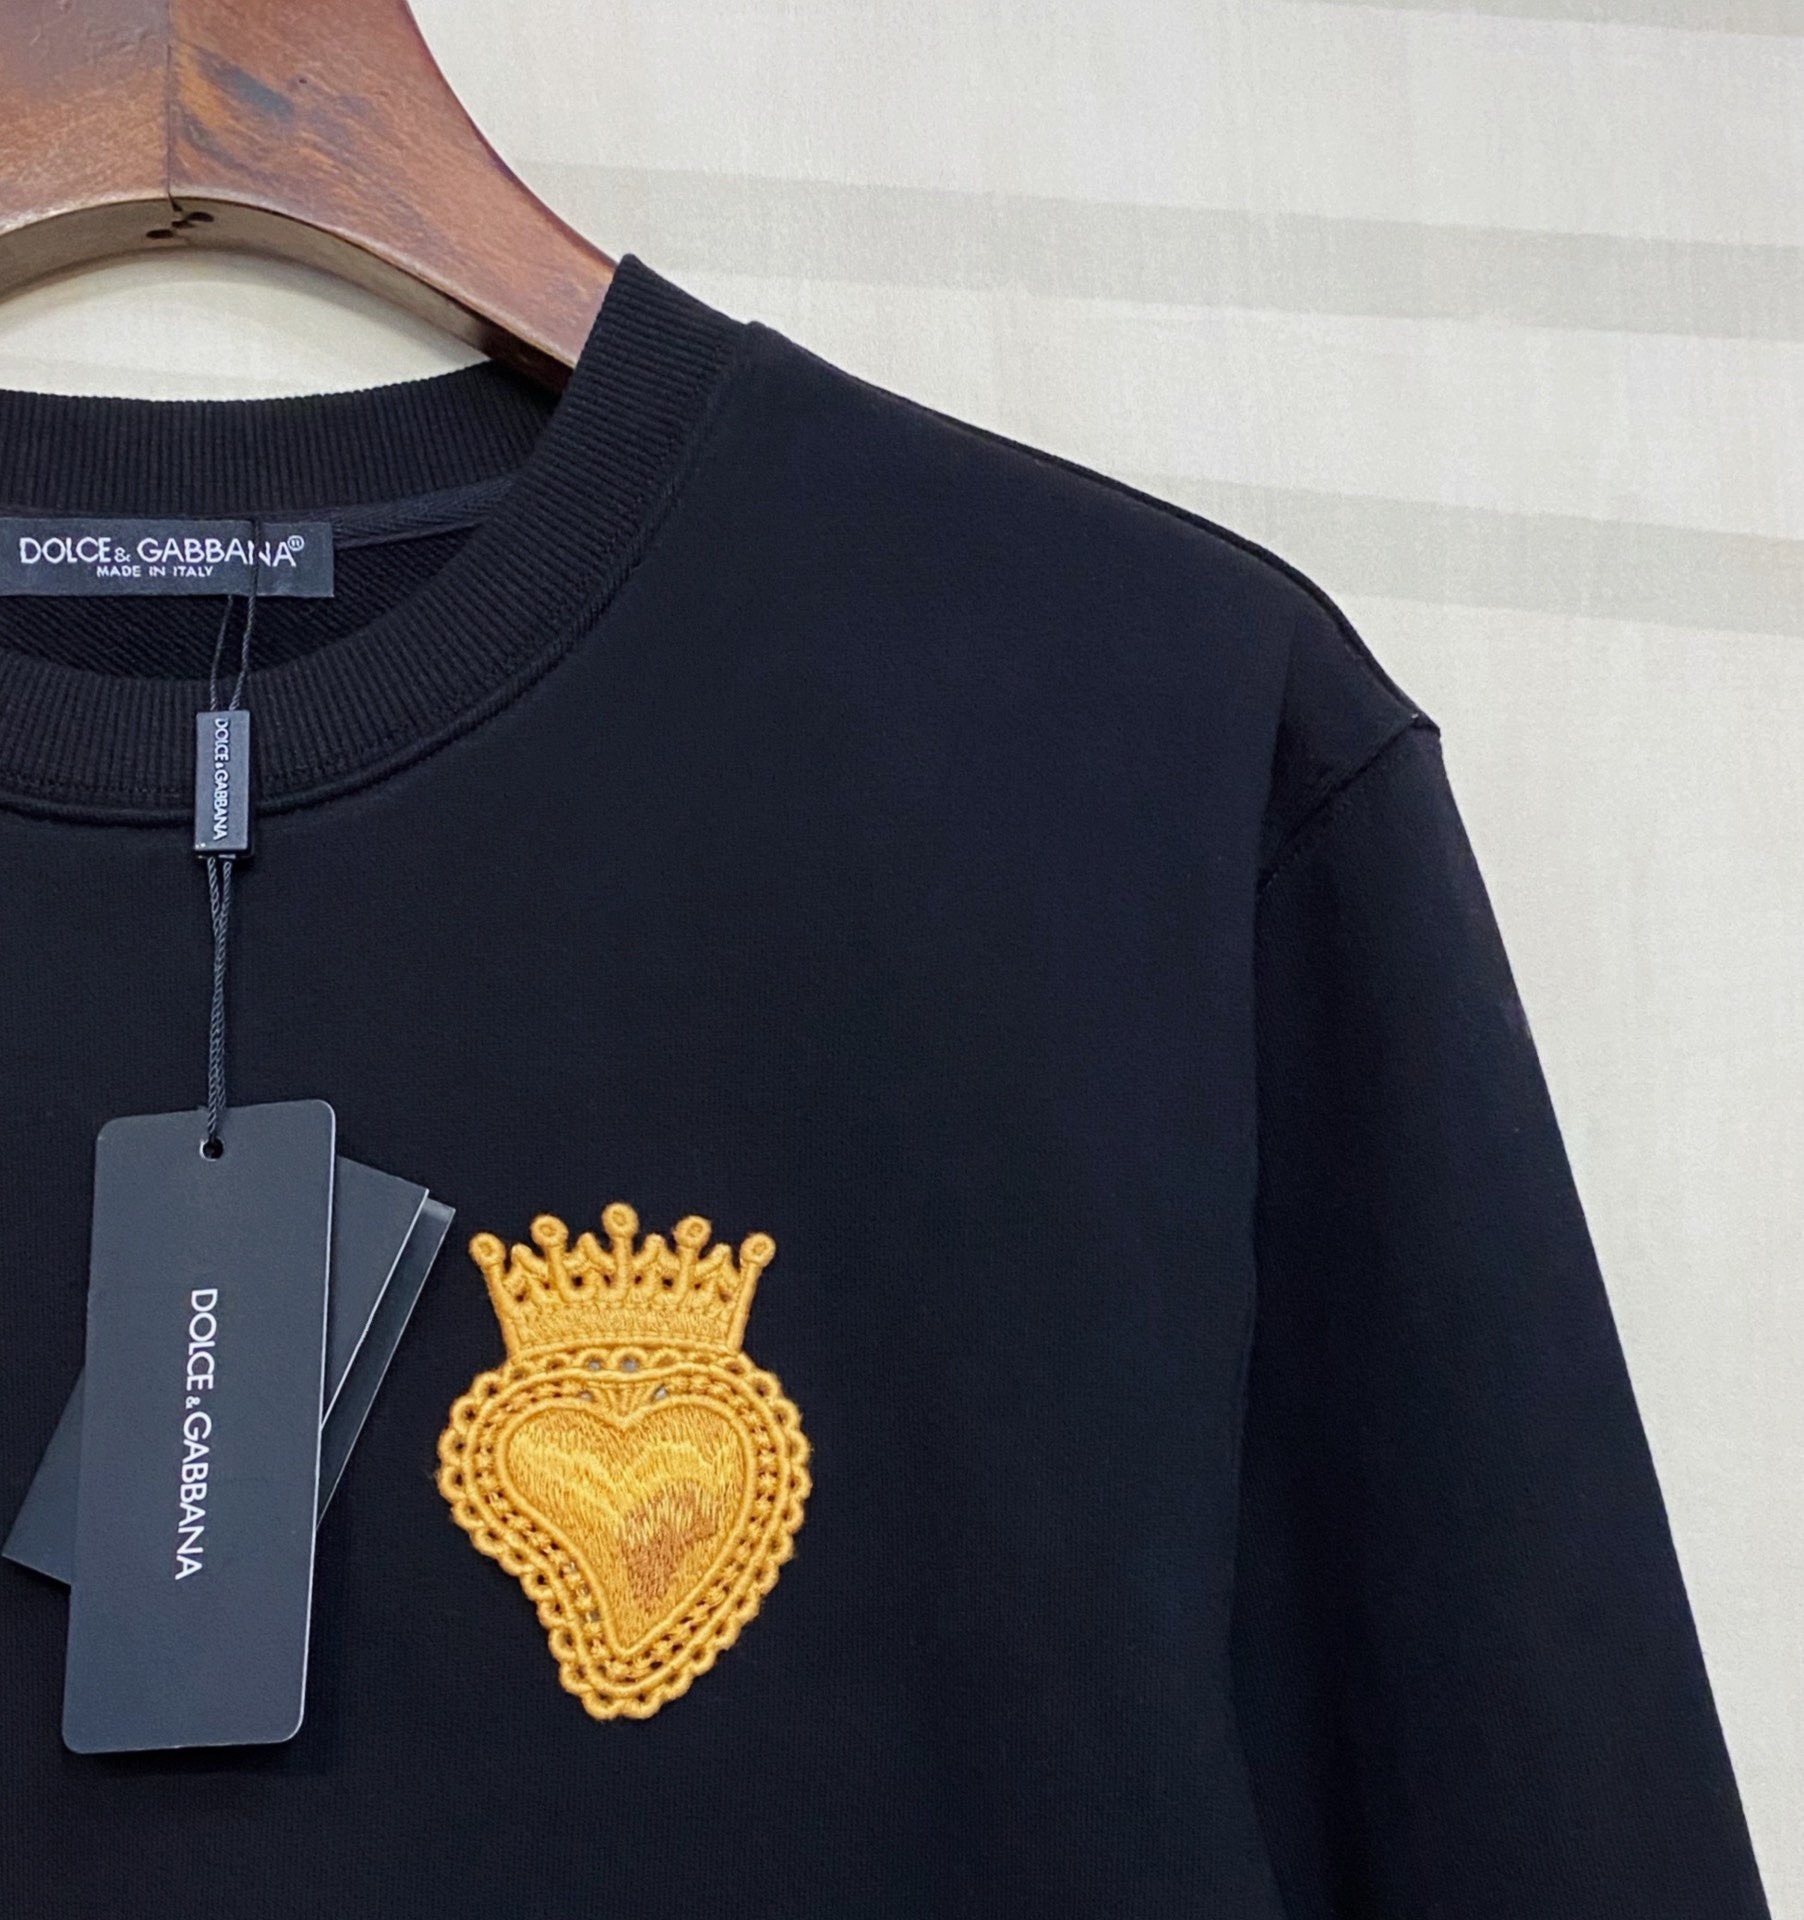 Áo Sweater Tay Dài Cổ Tròn Thêu Hình Trái Tim Và Vương Miện Thời Trang Thu Đông 2020 D0Lce & Gabba